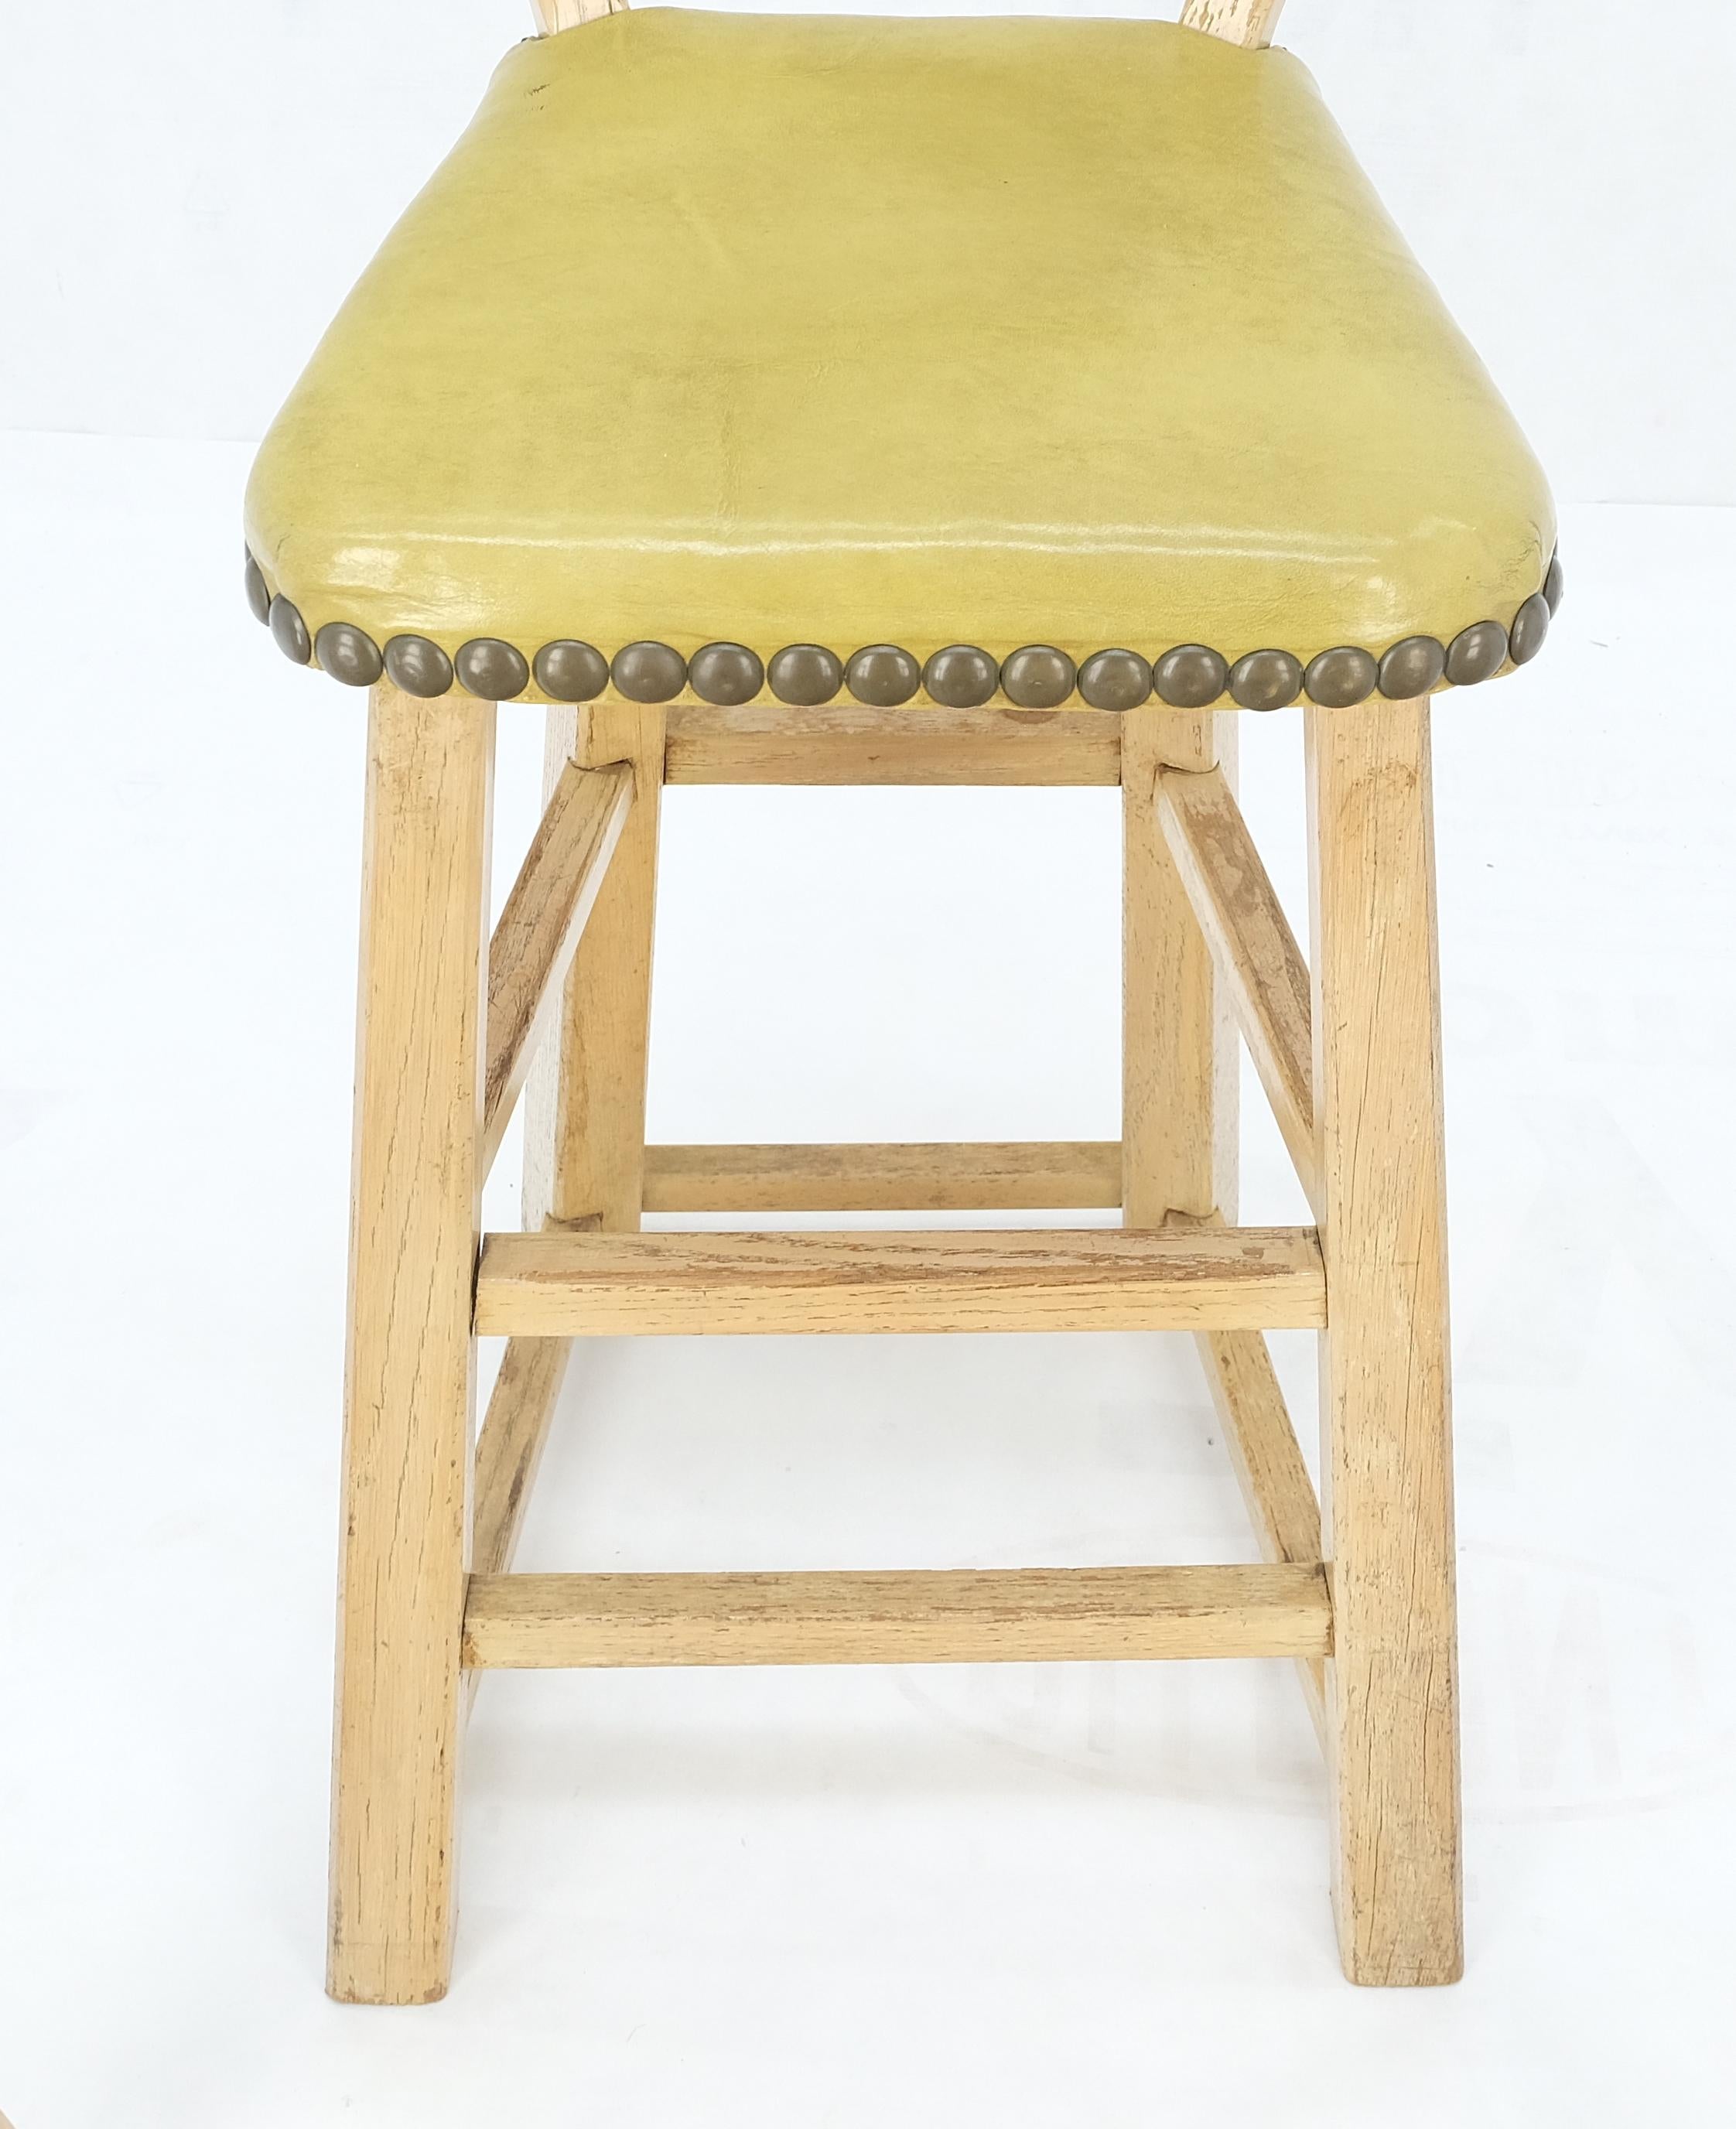 Satz von 4 Arts & Crafts Style Pferdekopf Kastanienschnitzerei Motiv Barhocker Stühle Olive Green Polsterung.